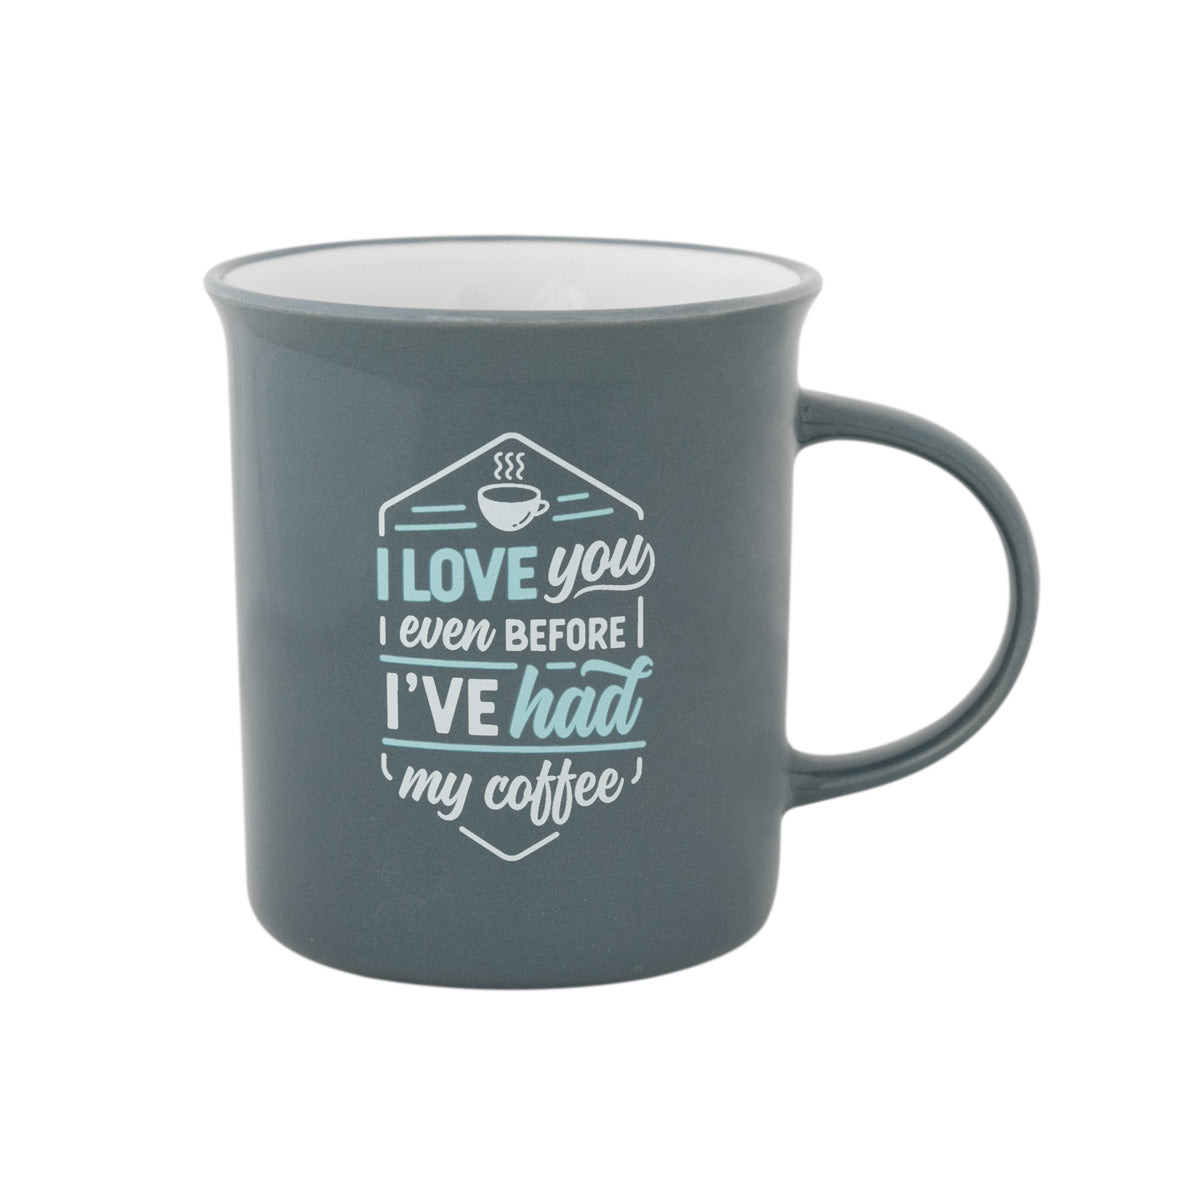 Mug I love you even before I've had my coffee